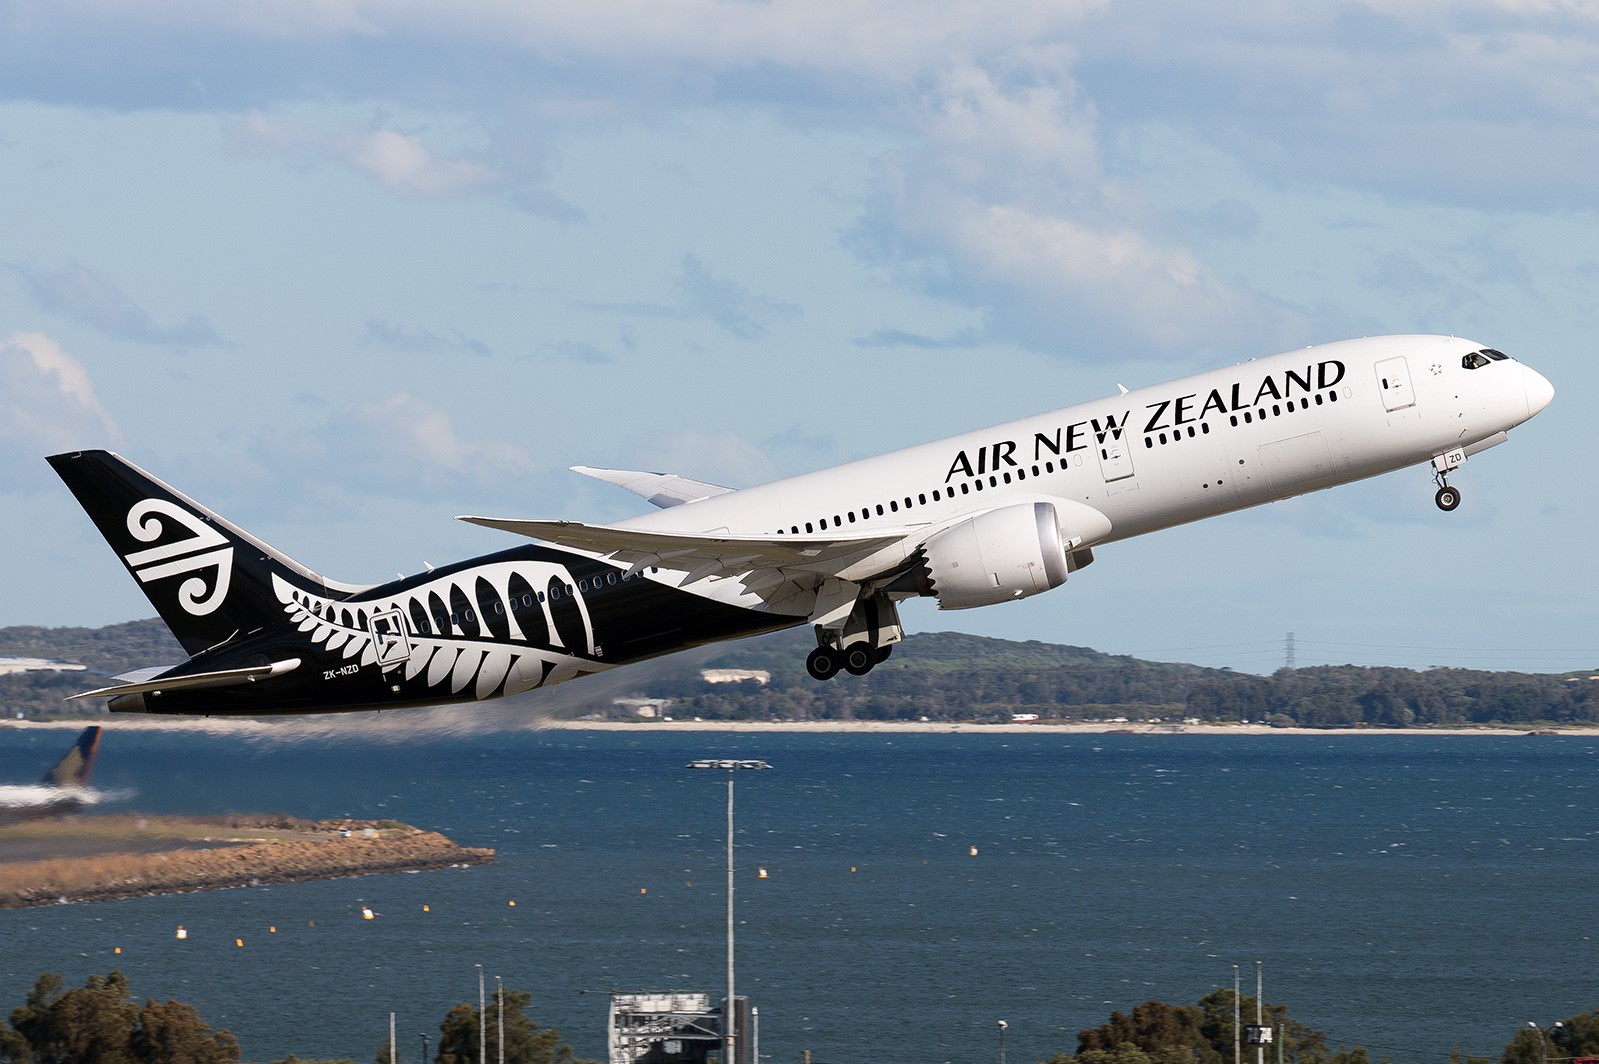 目的地上海 新西兰航空将使用787-9客机进行首次货运航班